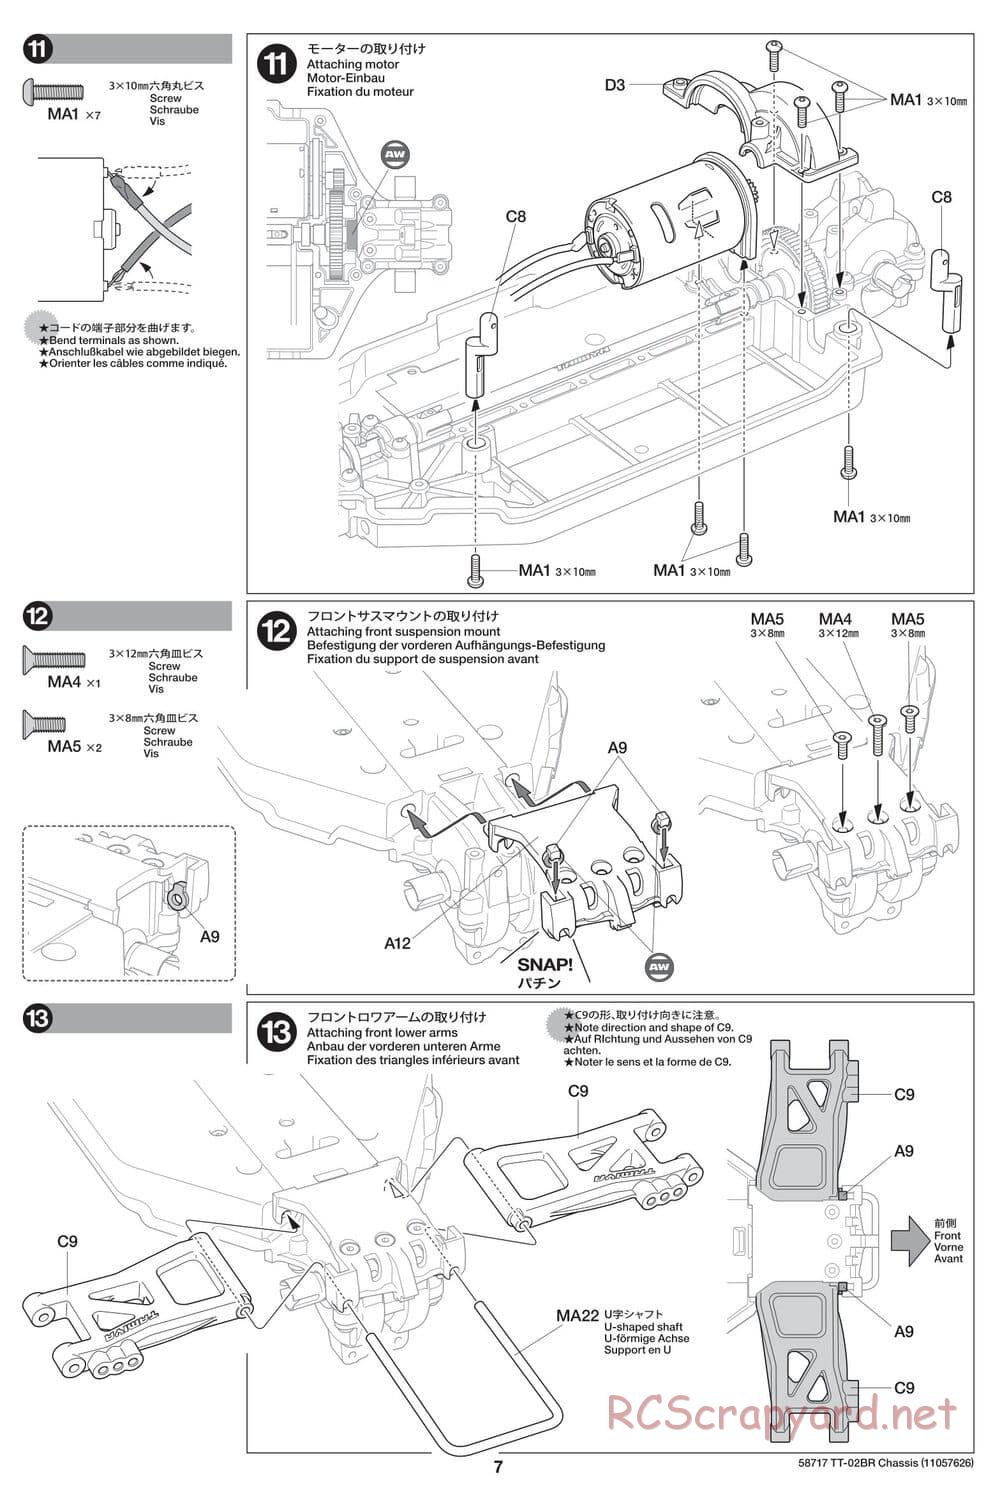 Tamiya - TT-02BR Chassis - Manual - Page 7